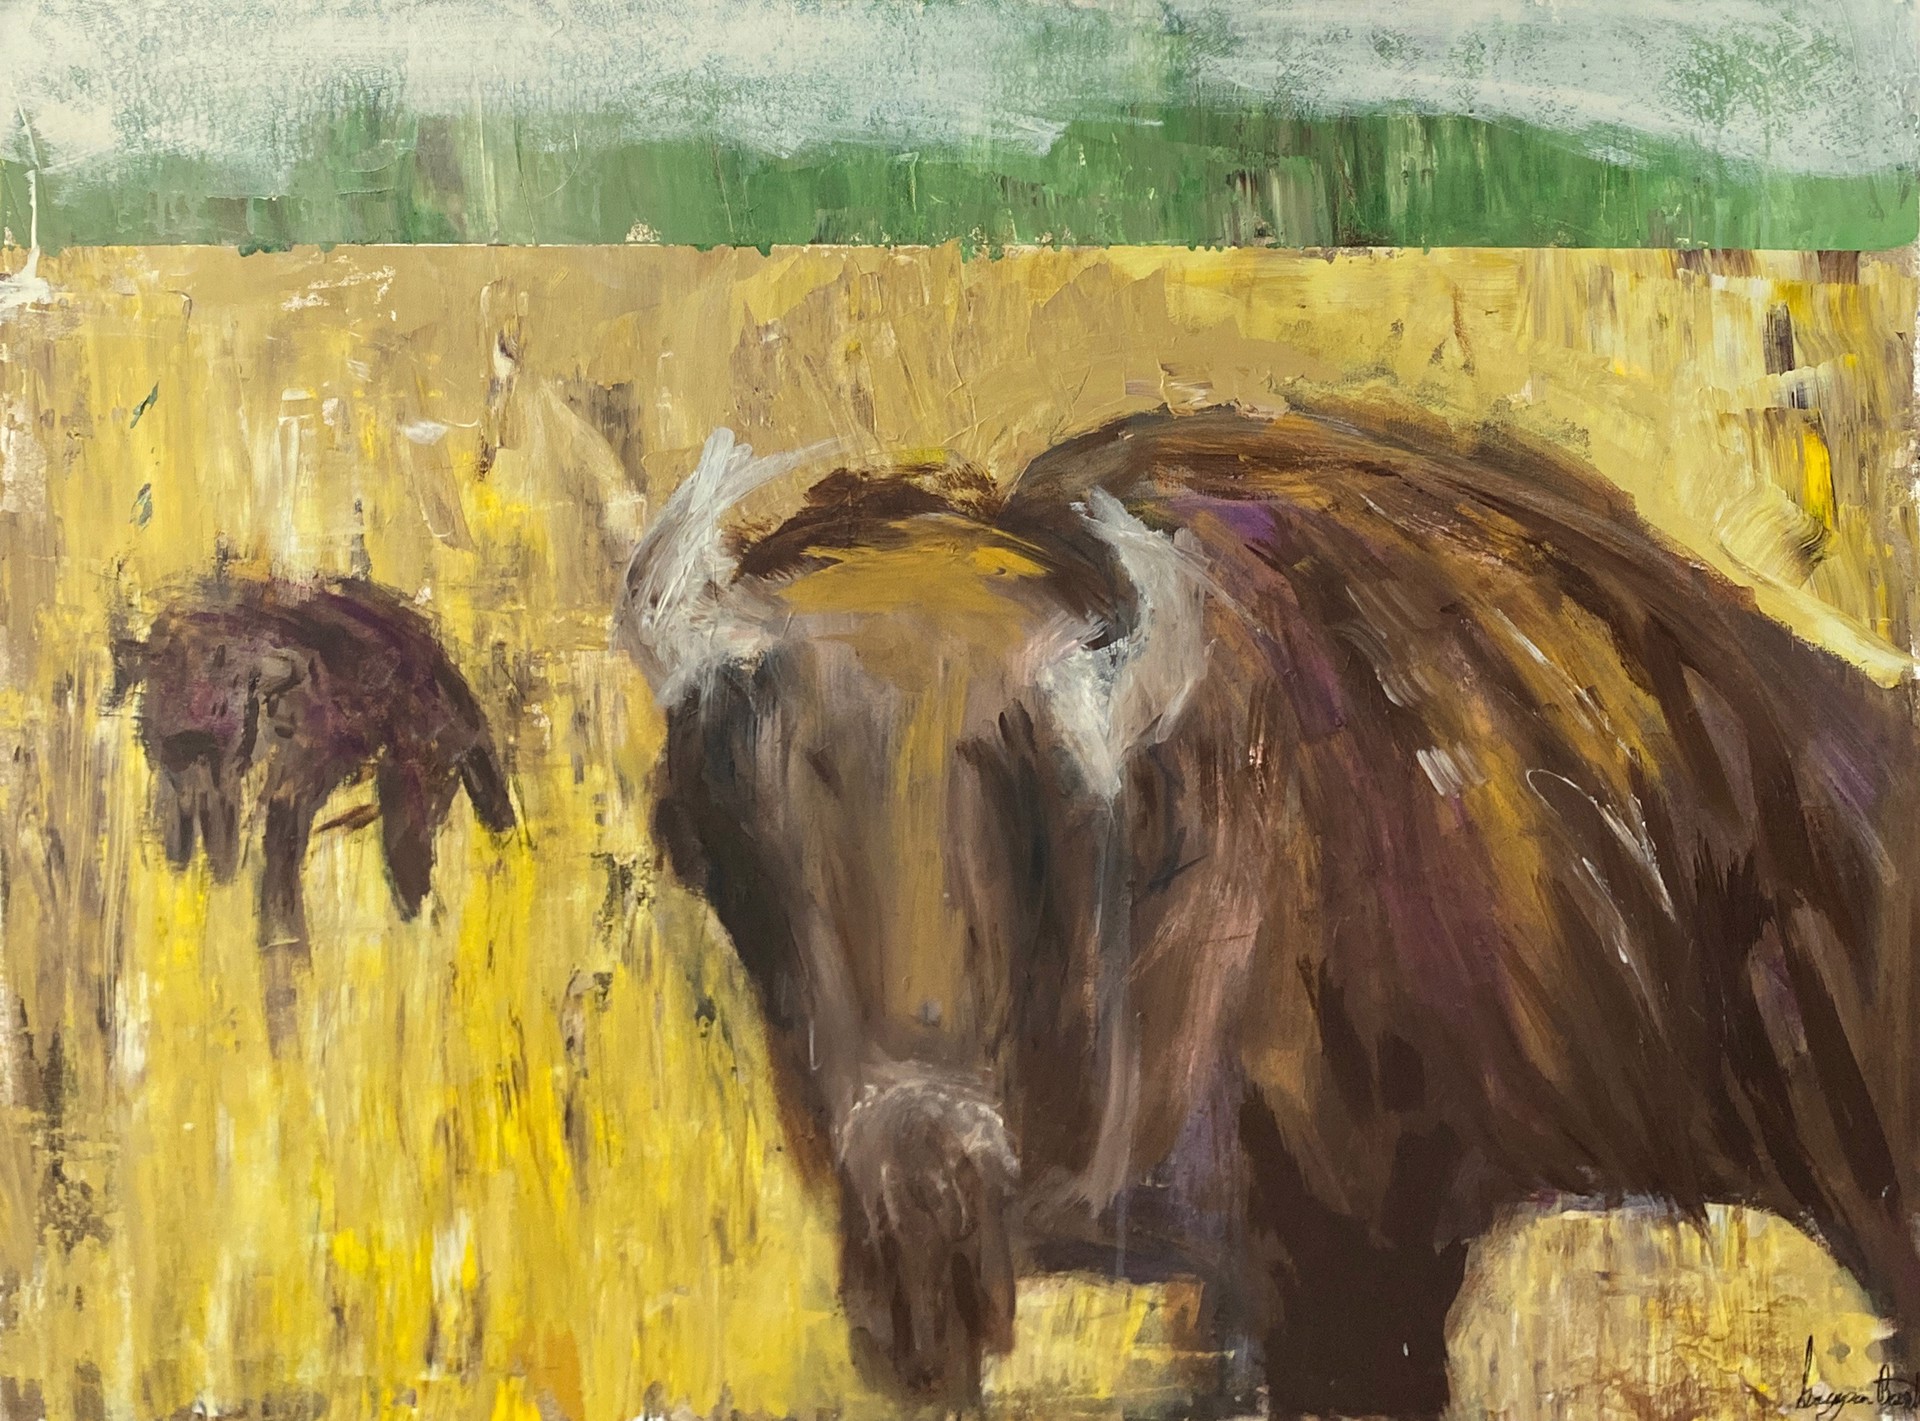 Two Buffalos by Grayson Barrett